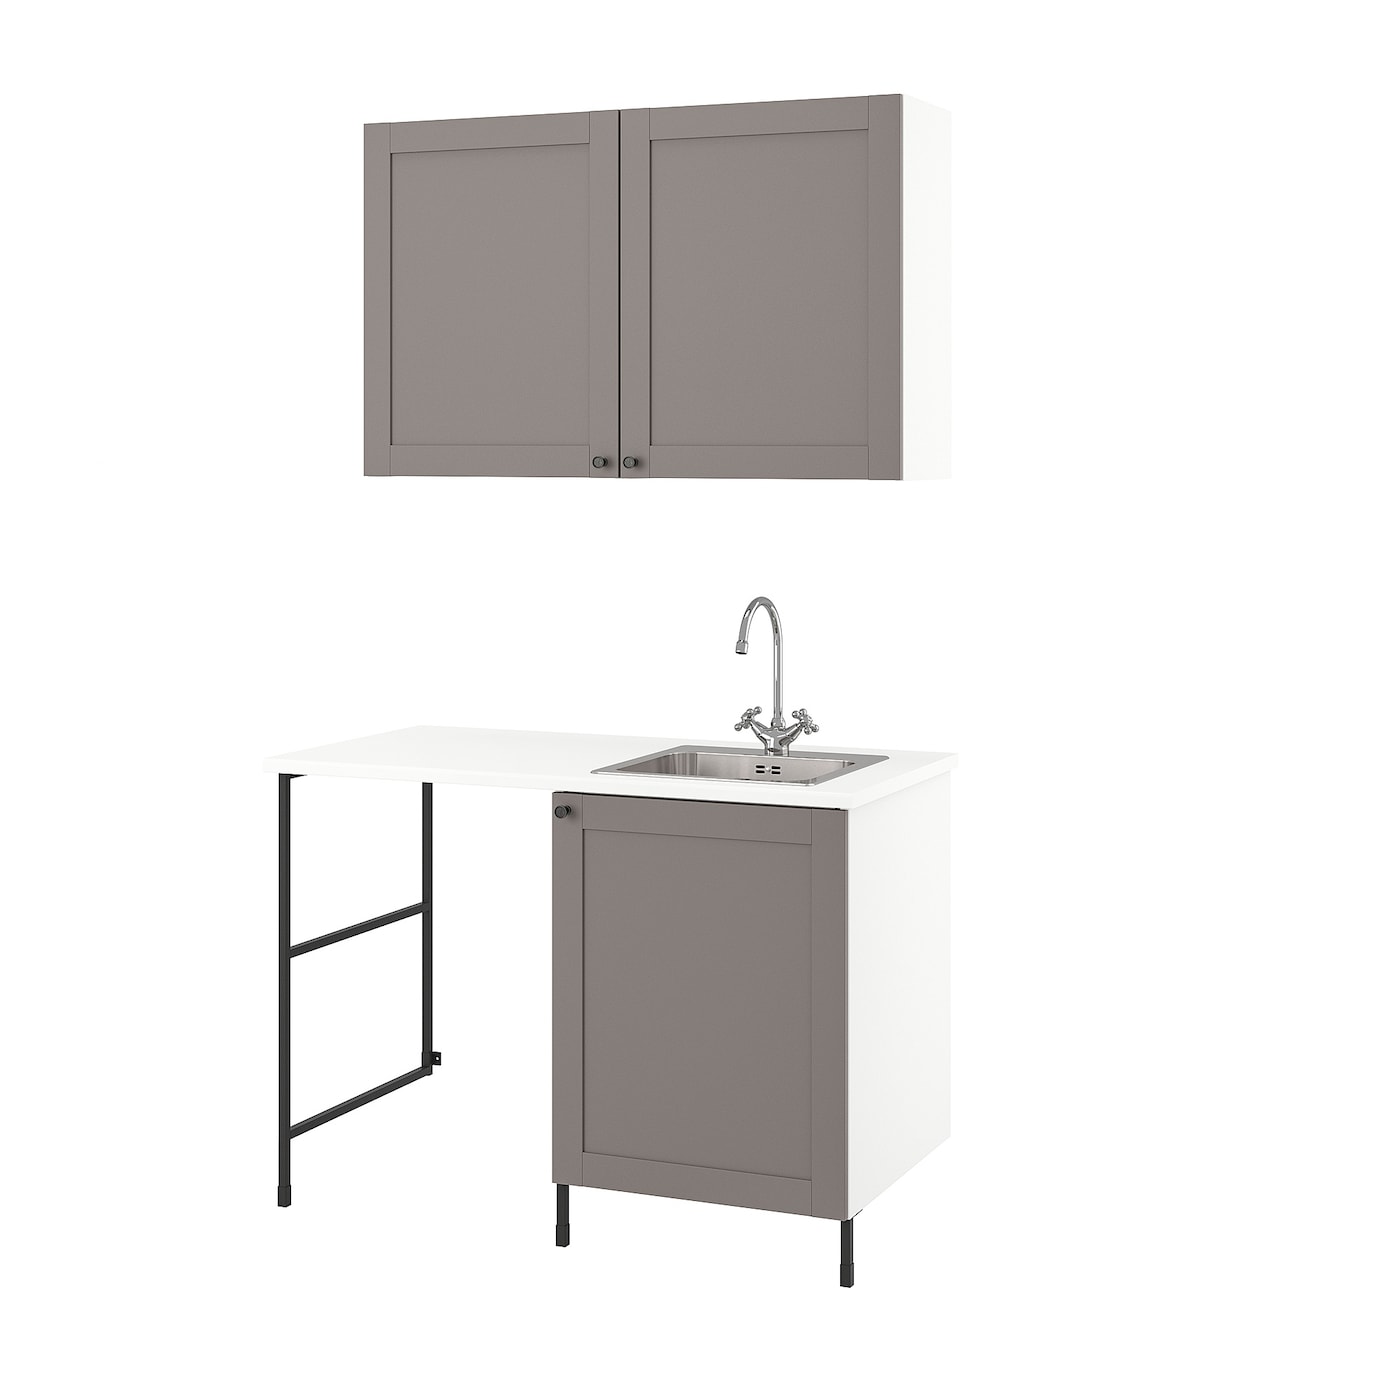 Комбинация для ванной - IKEA ENHET,  139x63.5x87.5 см, серый/антрацит, ЭНХЕТ ИКЕА